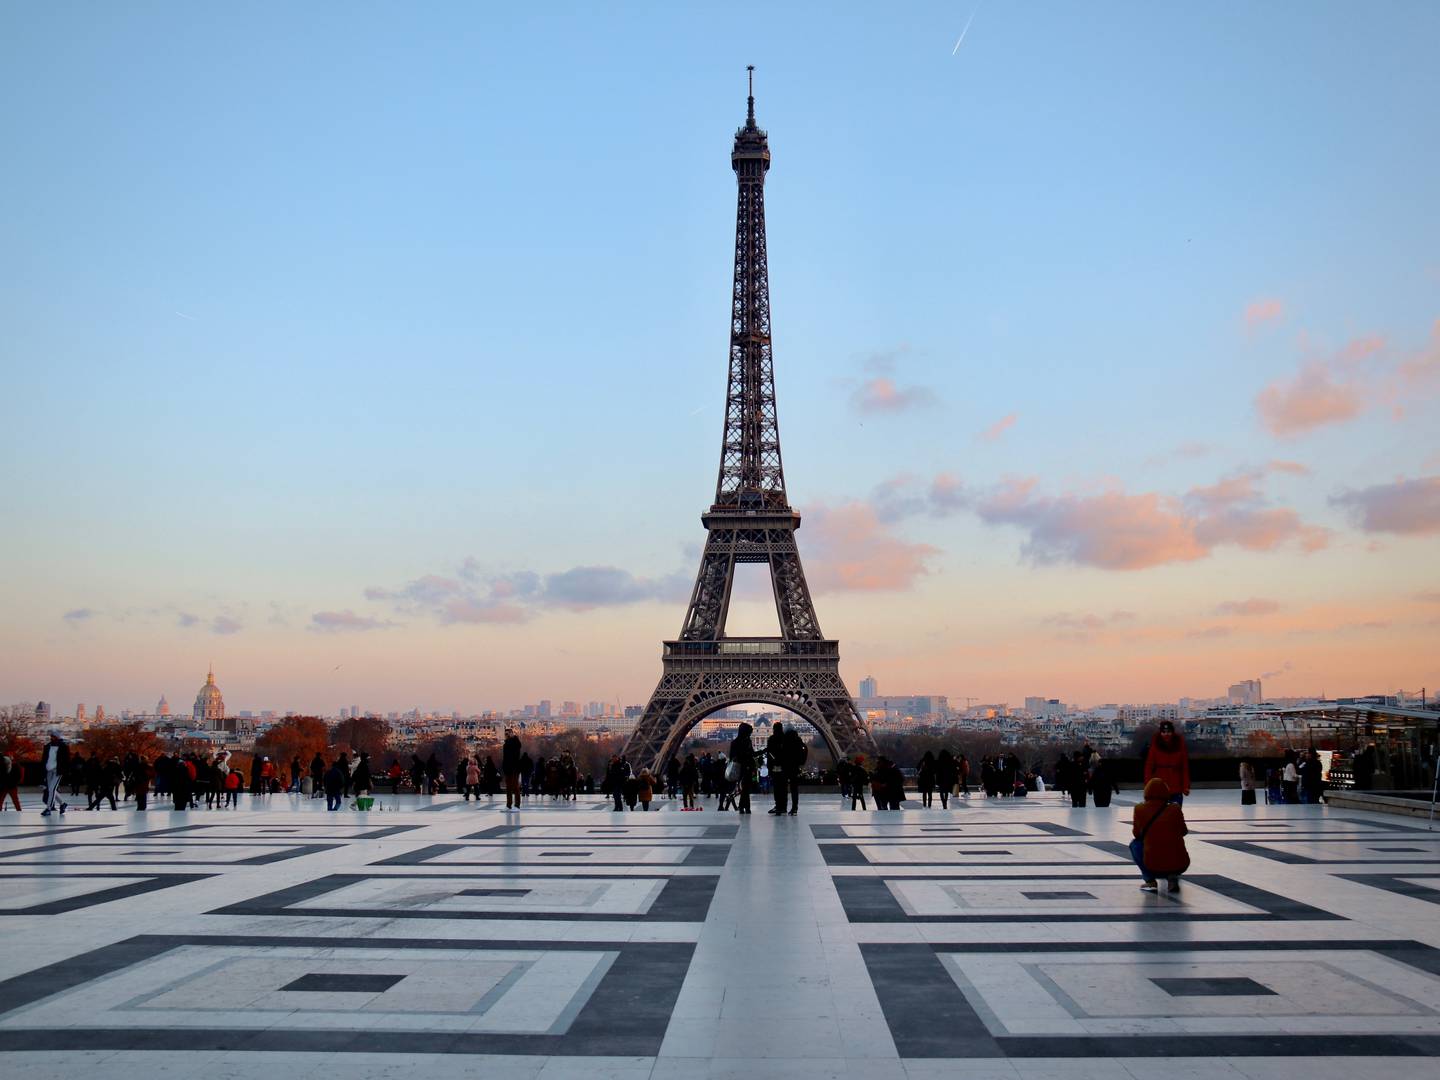 The Eiffel Tower in Paris. Photo: Fabien Maurin